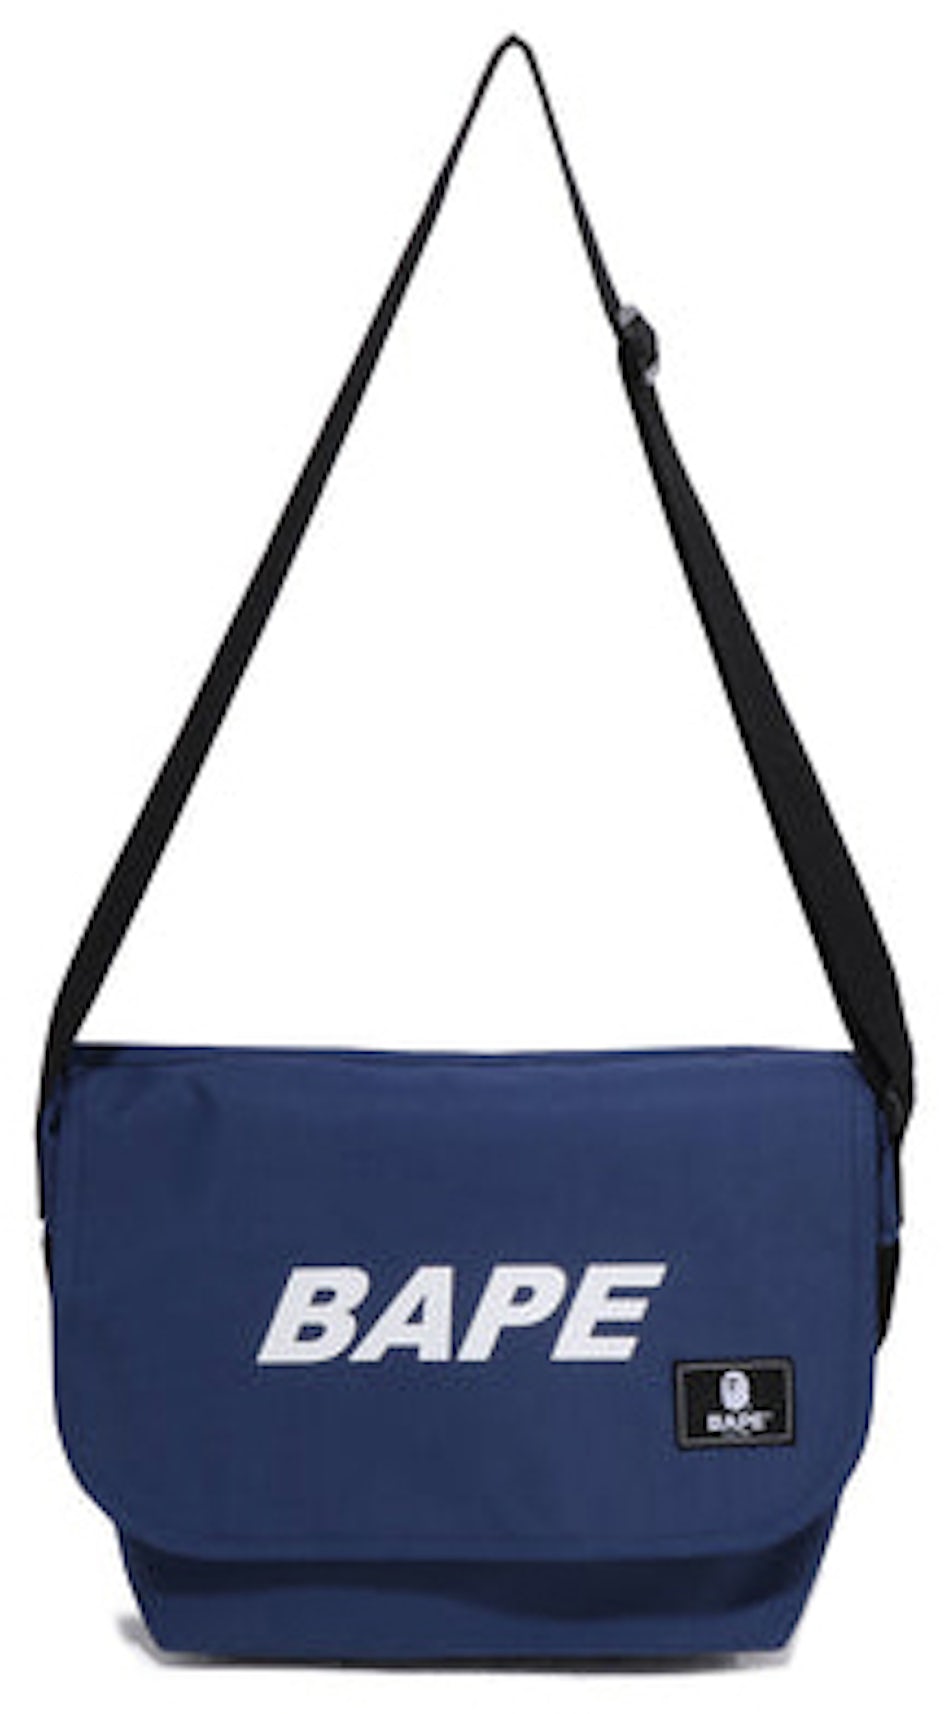 Bape Cross-Body Strap Bags for Men